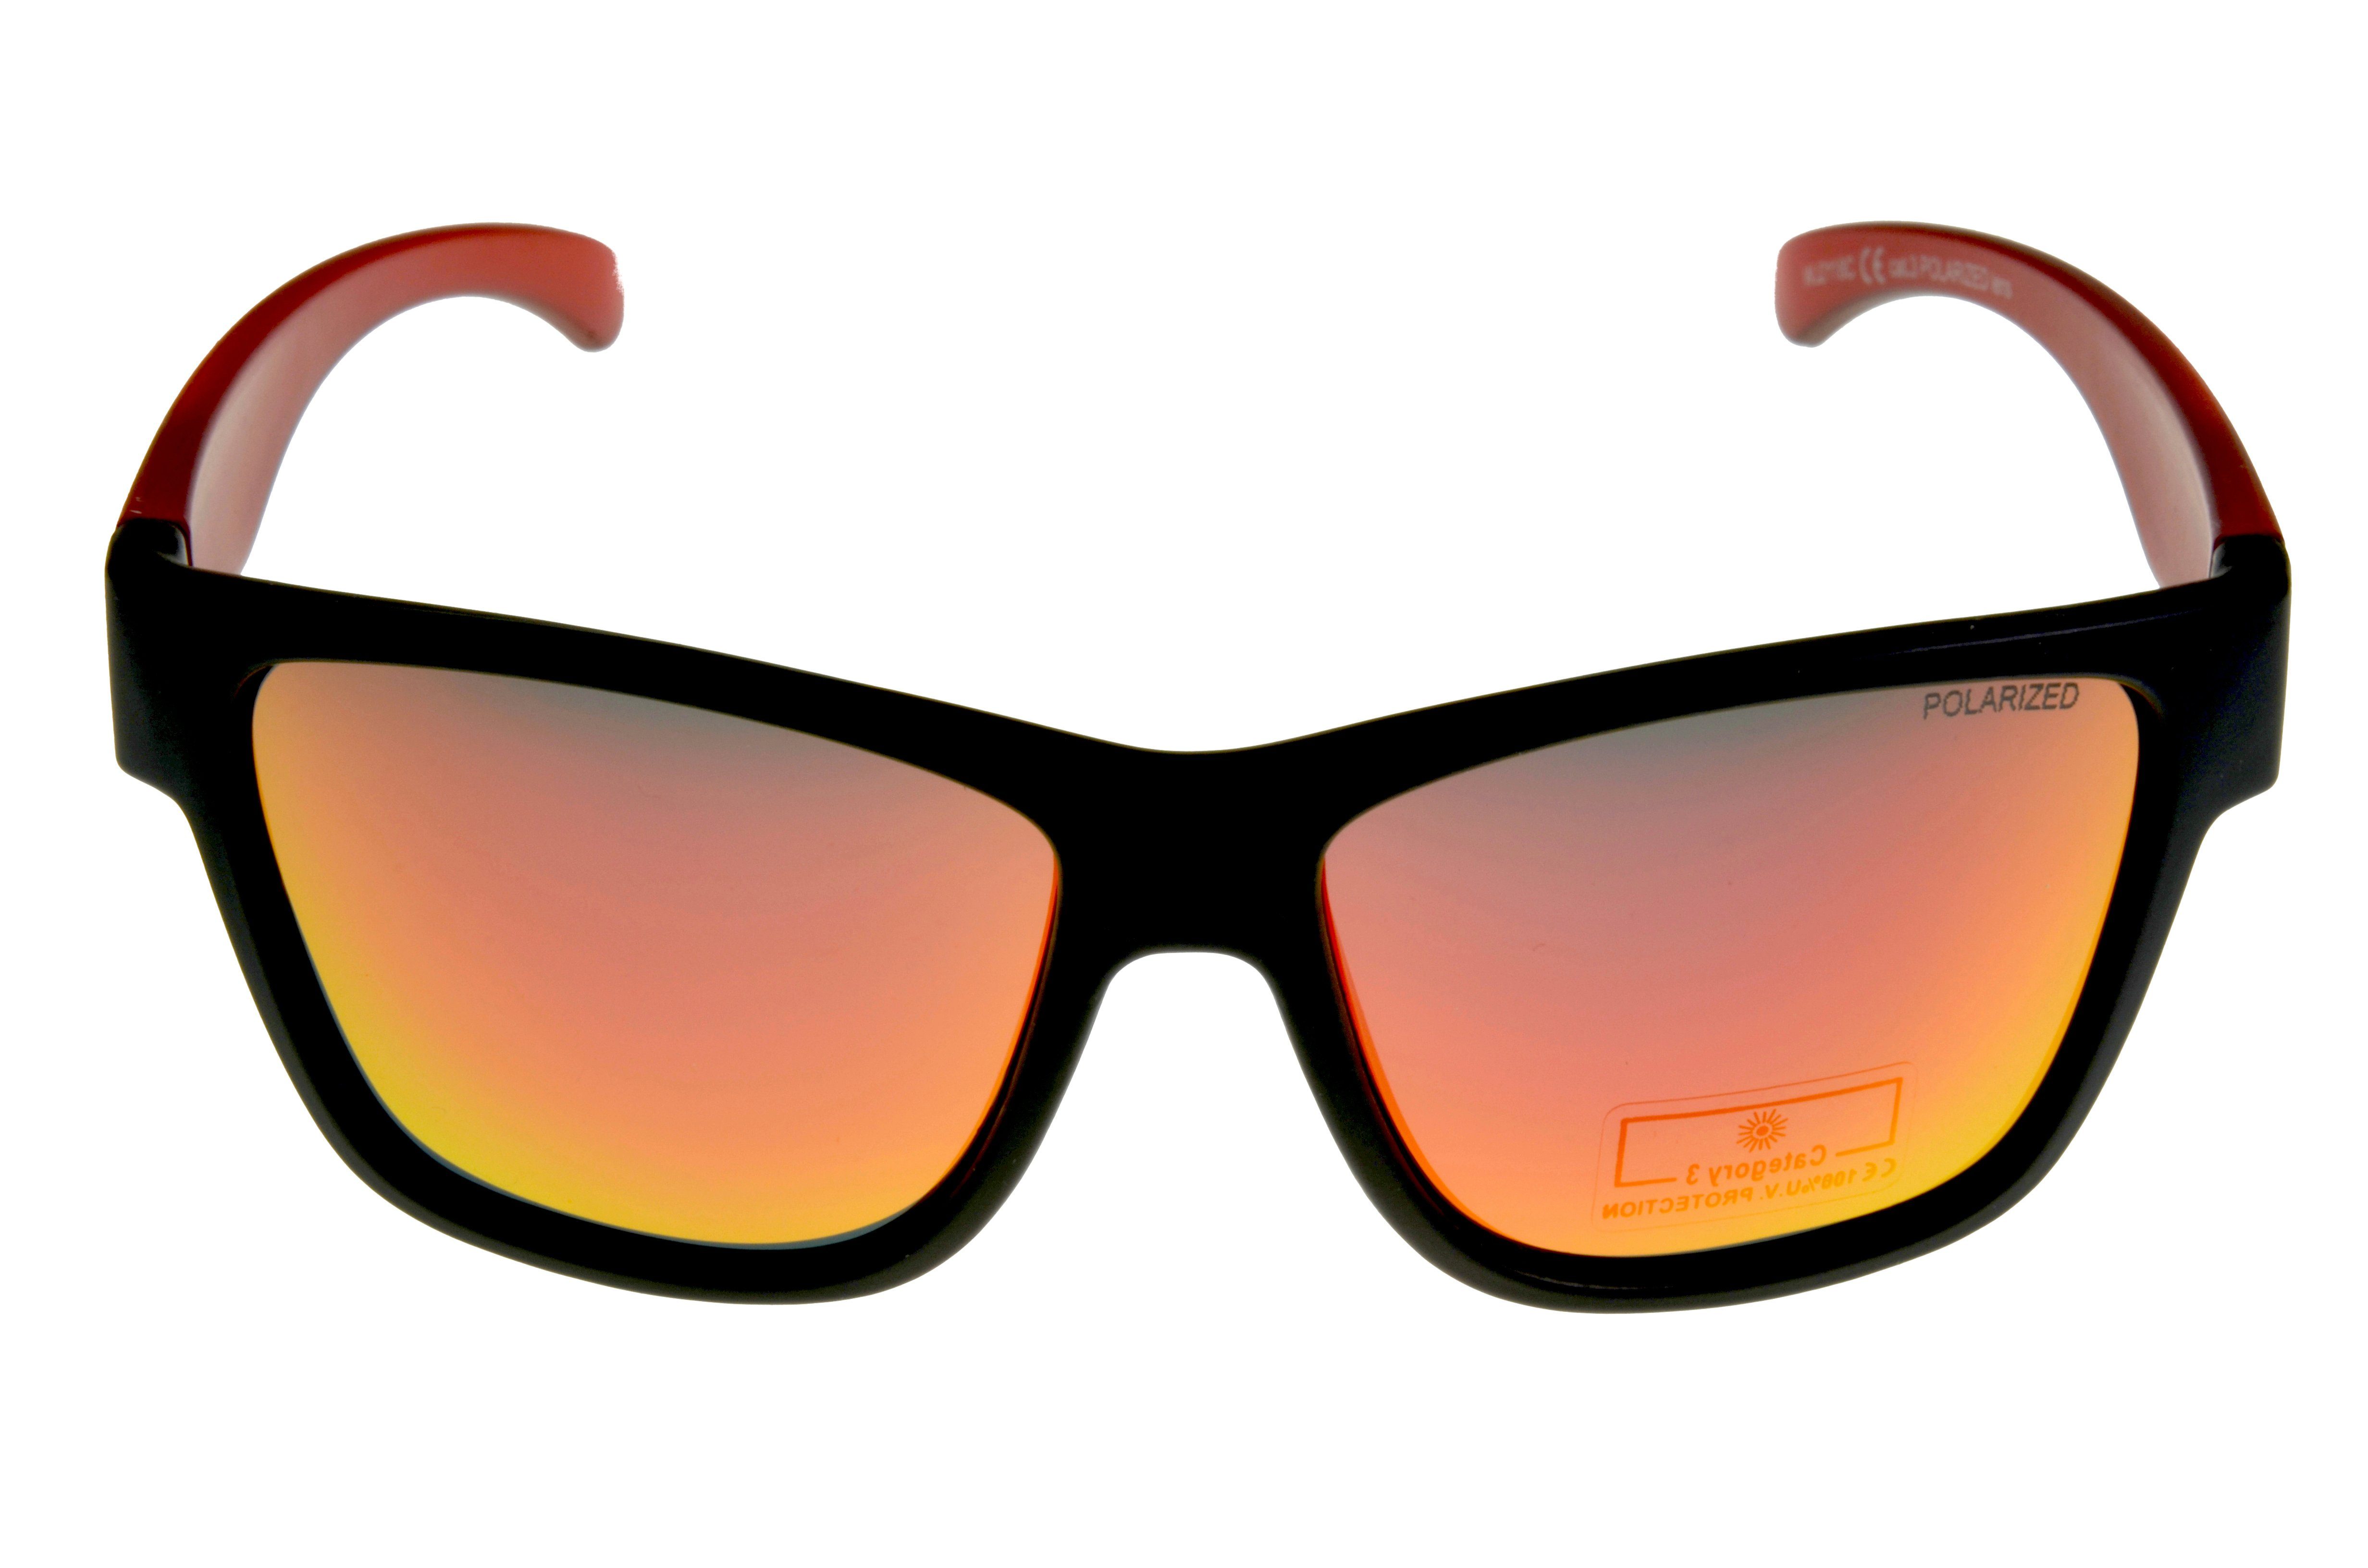 Gamswild Sonnenbrille WJ2118 GAMSKIDS Jugendbrille 8-18 Jahre Rahmen blau Gläser" grün, Unisex Kinderbrille rot, kids NEU halbtransparenter "polarisierte